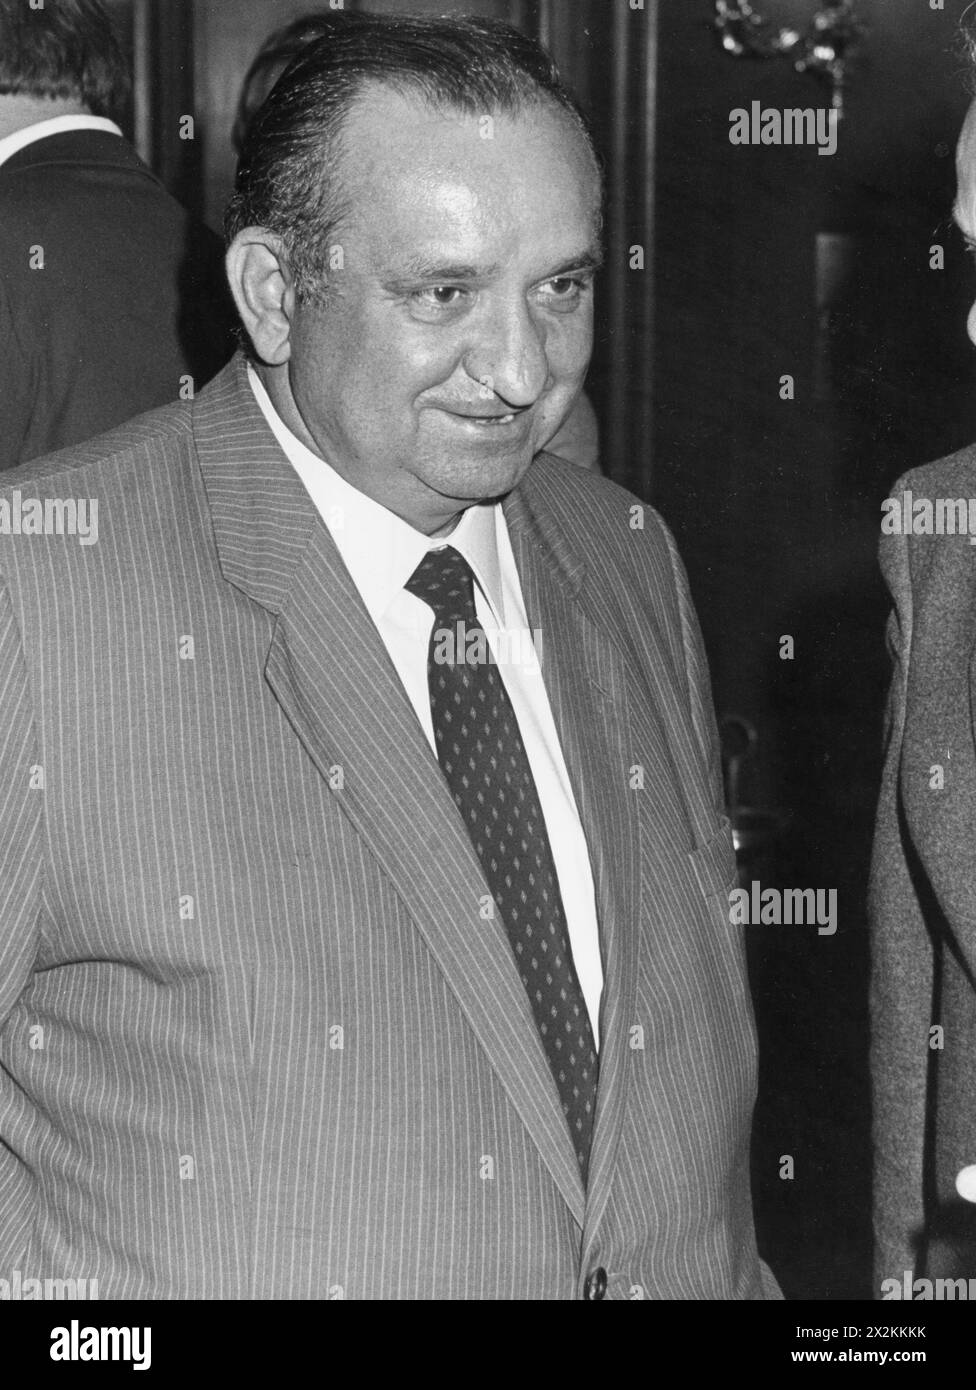 Sinowatz, Fred, 5.2.1929 - 11.8,2008, homme politique autrichien (Parti social-démocrate d'Autriche (SPOe)), ADDITIONAL-RIGHTS-LEARANCE-INFO-NOT-AVAILABLE Banque D'Images